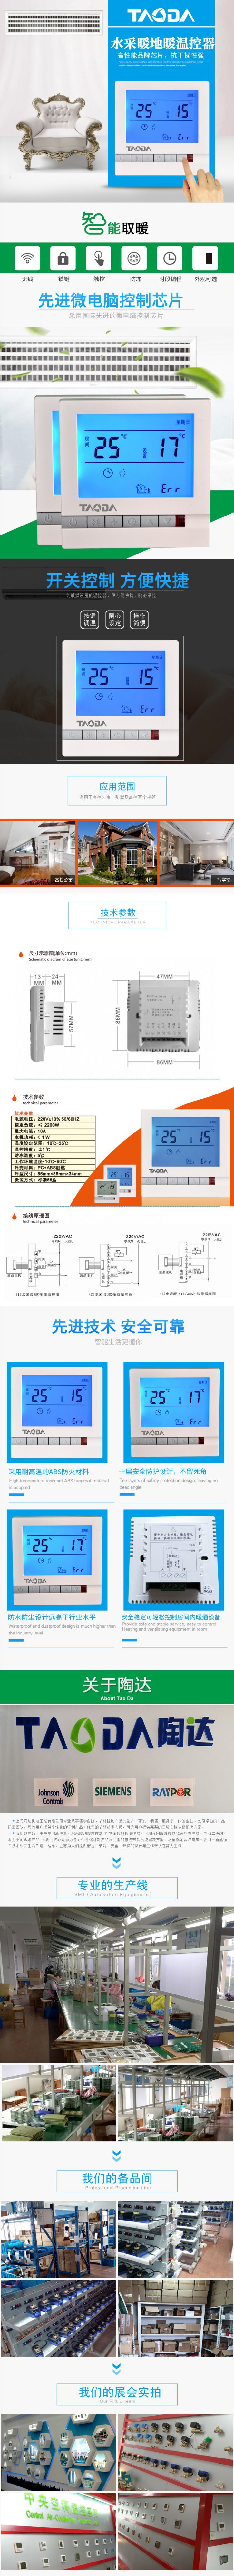 地暖温控器 水采暖地暖温控器 上海陶达燃气壁挂炉温控器示例图1